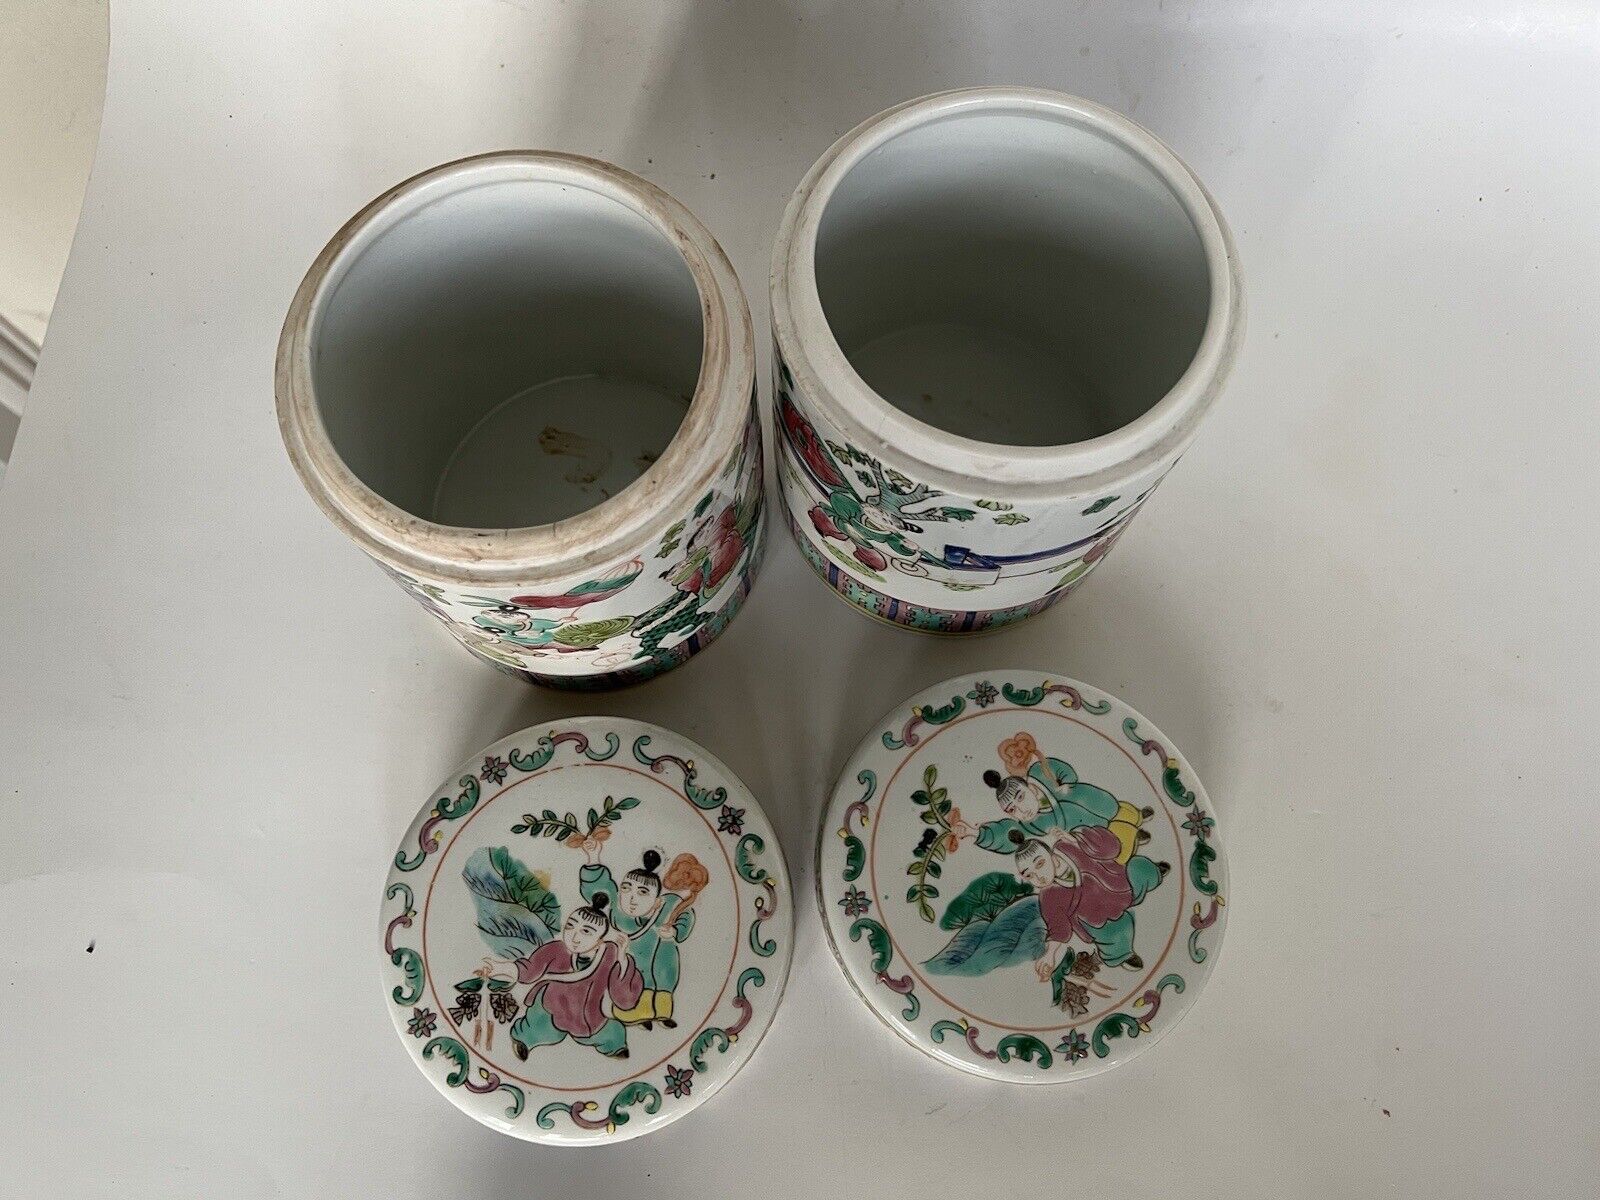 2 Antique Chinese Hand Paint Dragon Children Cylinder Hallmark Famille Jars 6" Без бренда - фотография #8